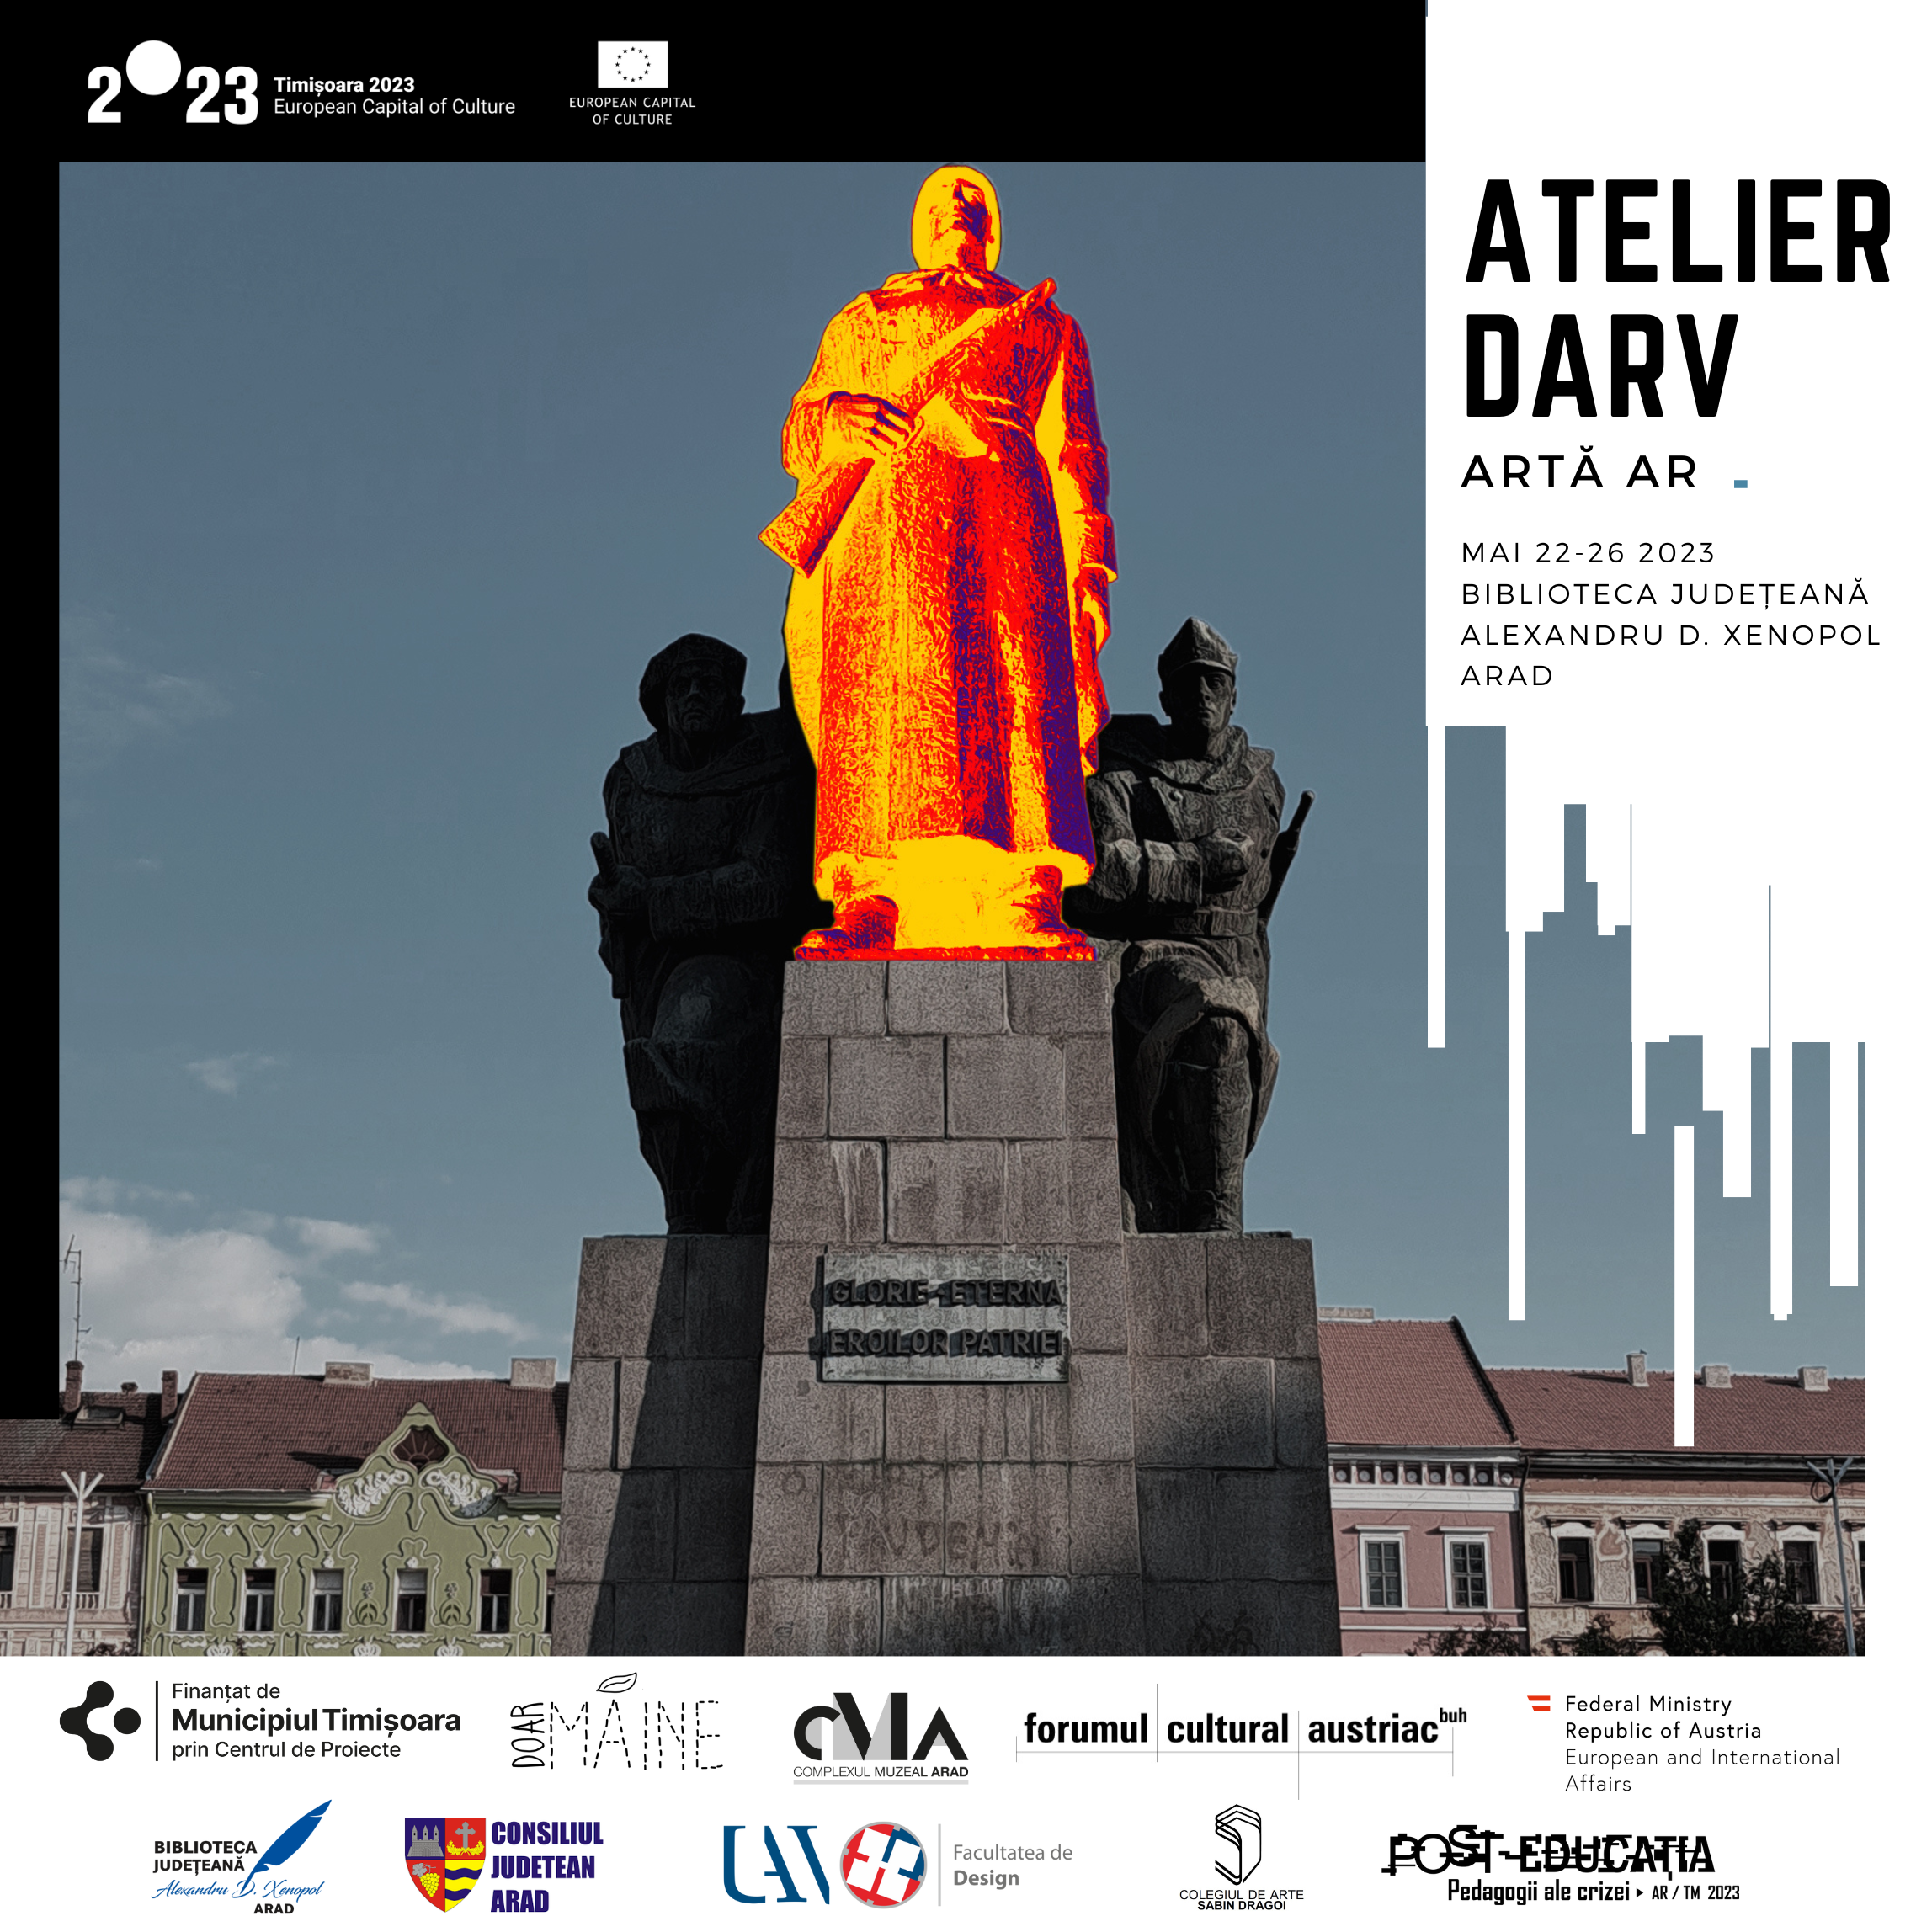 Atelier DARV: artă AR în spațiul public / Atelier practic Pedagogii ale crizei